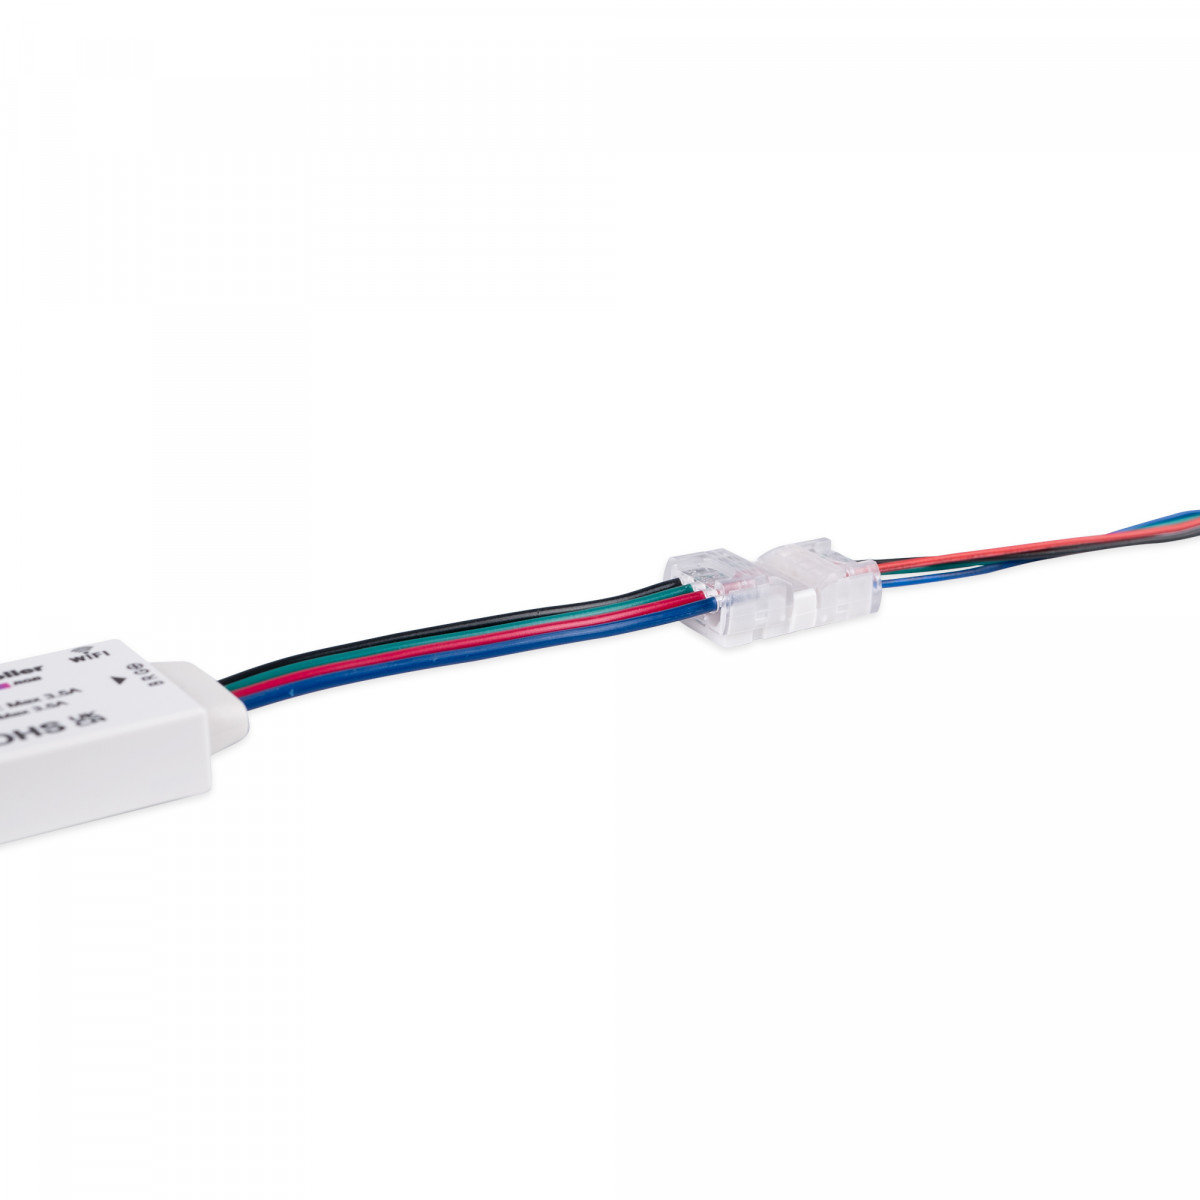 RGB Schnellverbinder, Kabel zu Kabel - 4 polig (4 Drähte) - LED Streifen verbinden, kein Löten